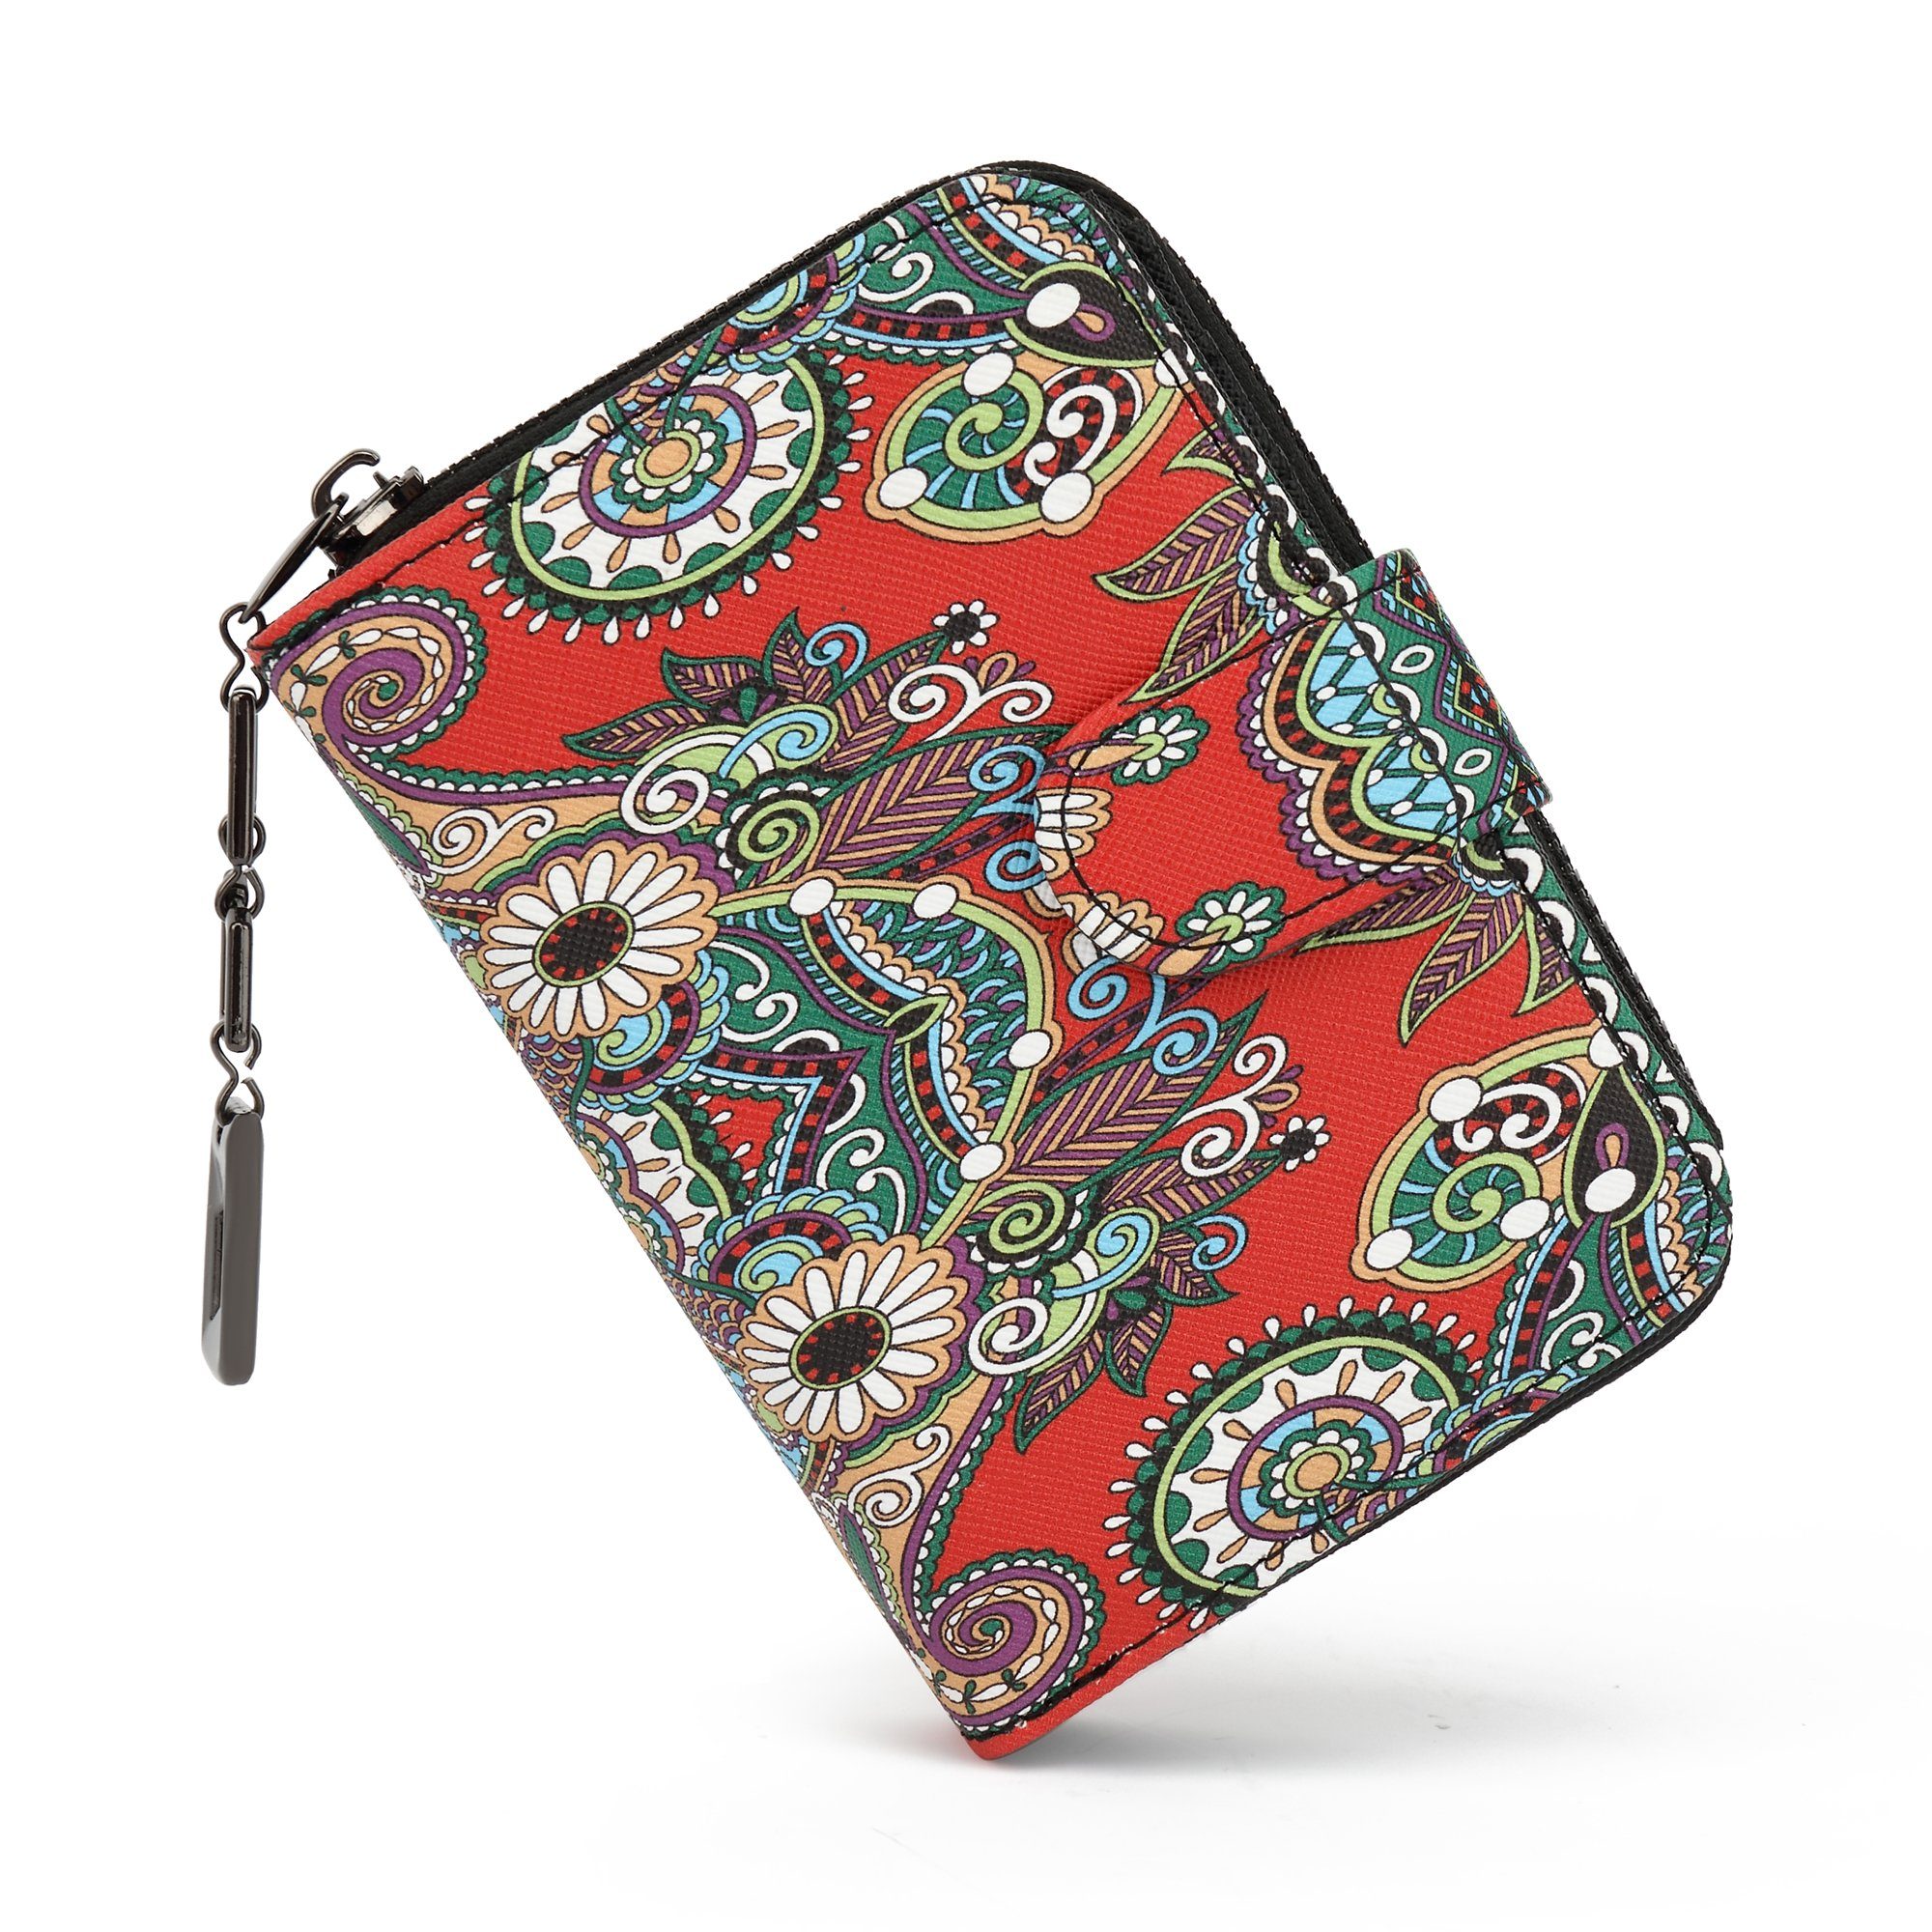 TAN.TOMI Brieftasche Geldbeutel mit Blumen- und Blütenmuster im Mandala Stil, Praktische Aufteilung mit viel Platz